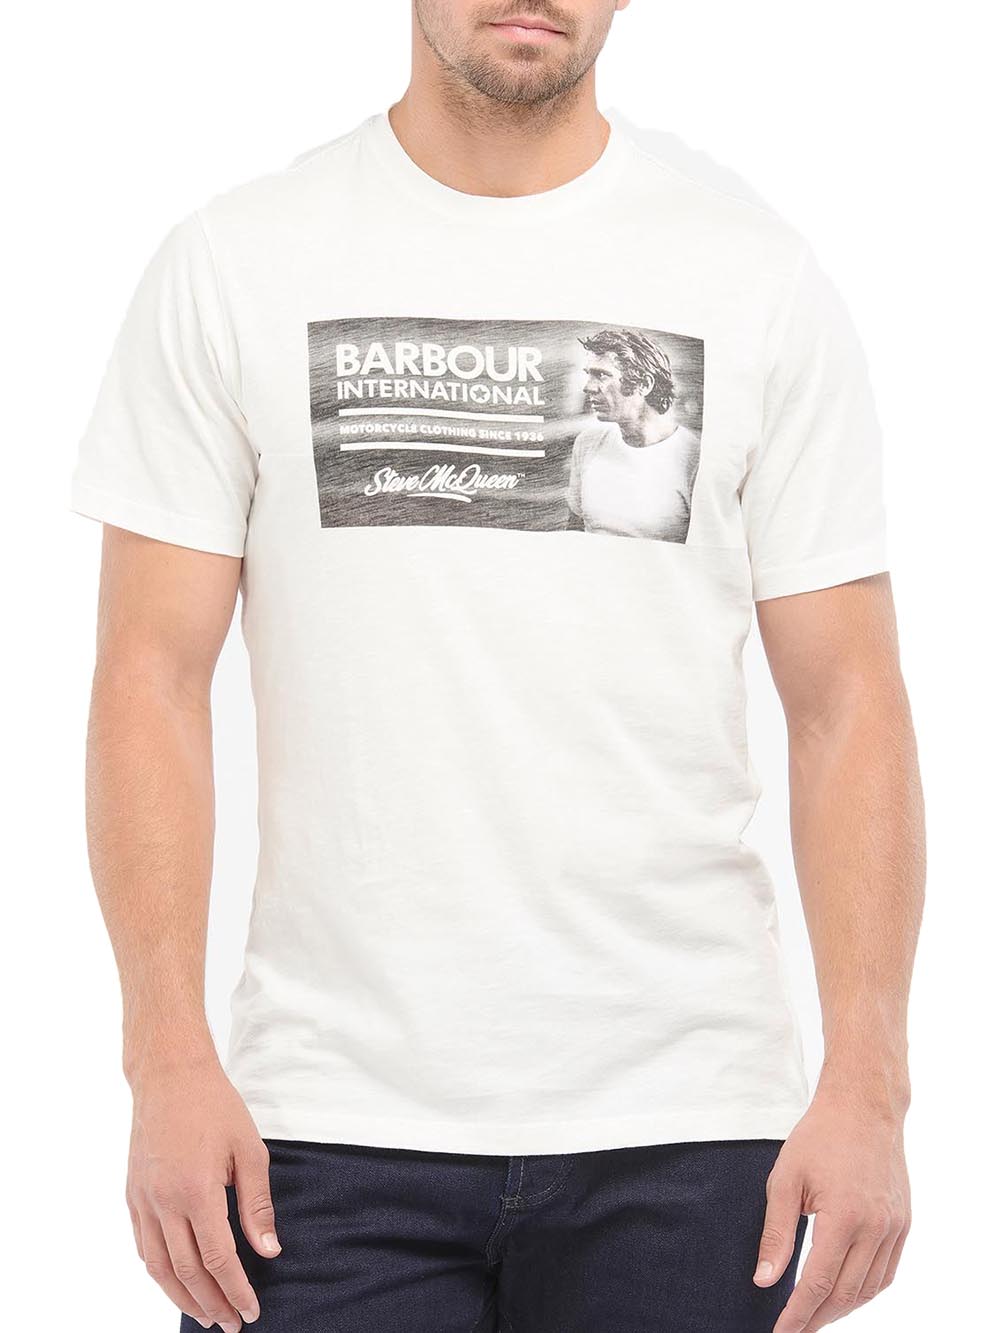 Barbour T-shirt Uomo Mts0931 B.intl Smq Legend Tee Panna